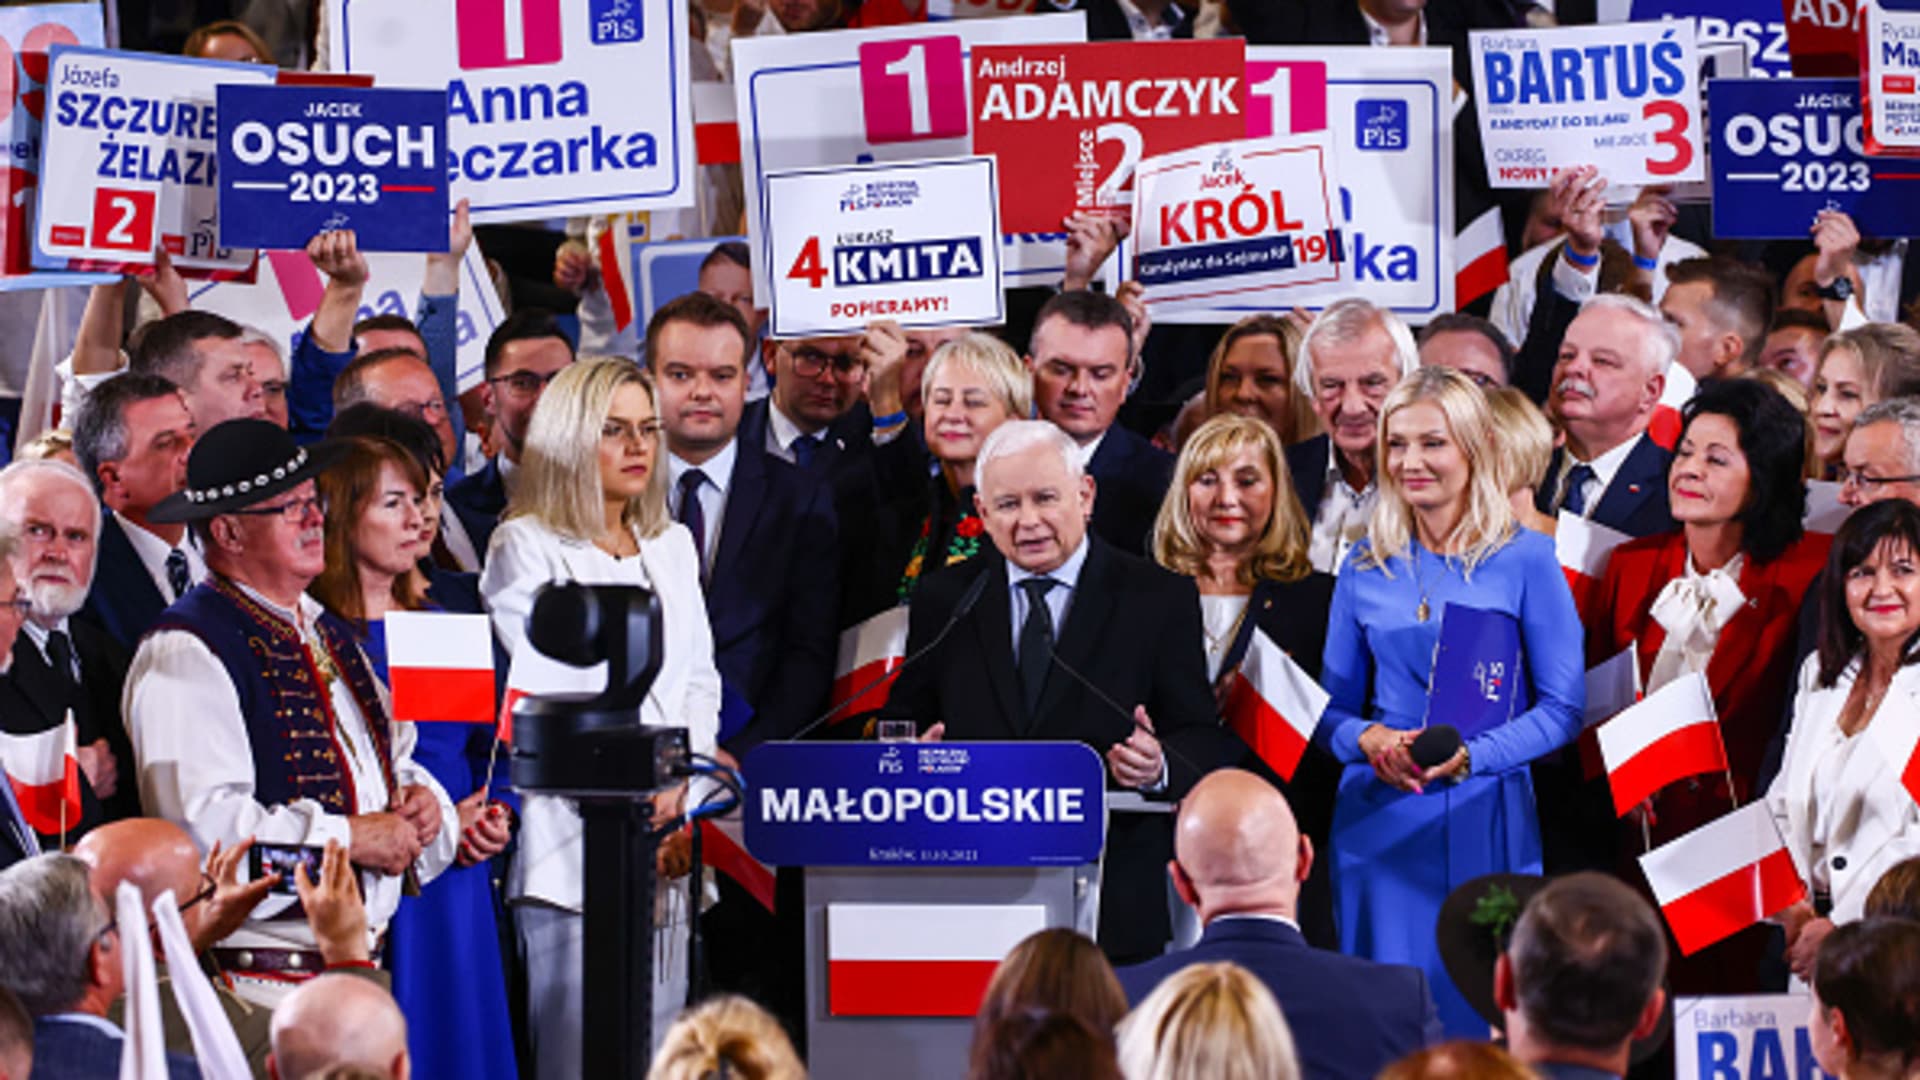 Jarosław Kaczyński, lider rządzącej partii Prawo i Sprawiedliwość (PiS), wygłasza przemówienie podczas wydarzenia kończącego kampanię wyborczą w Krakowie, 11 października 2023 r.